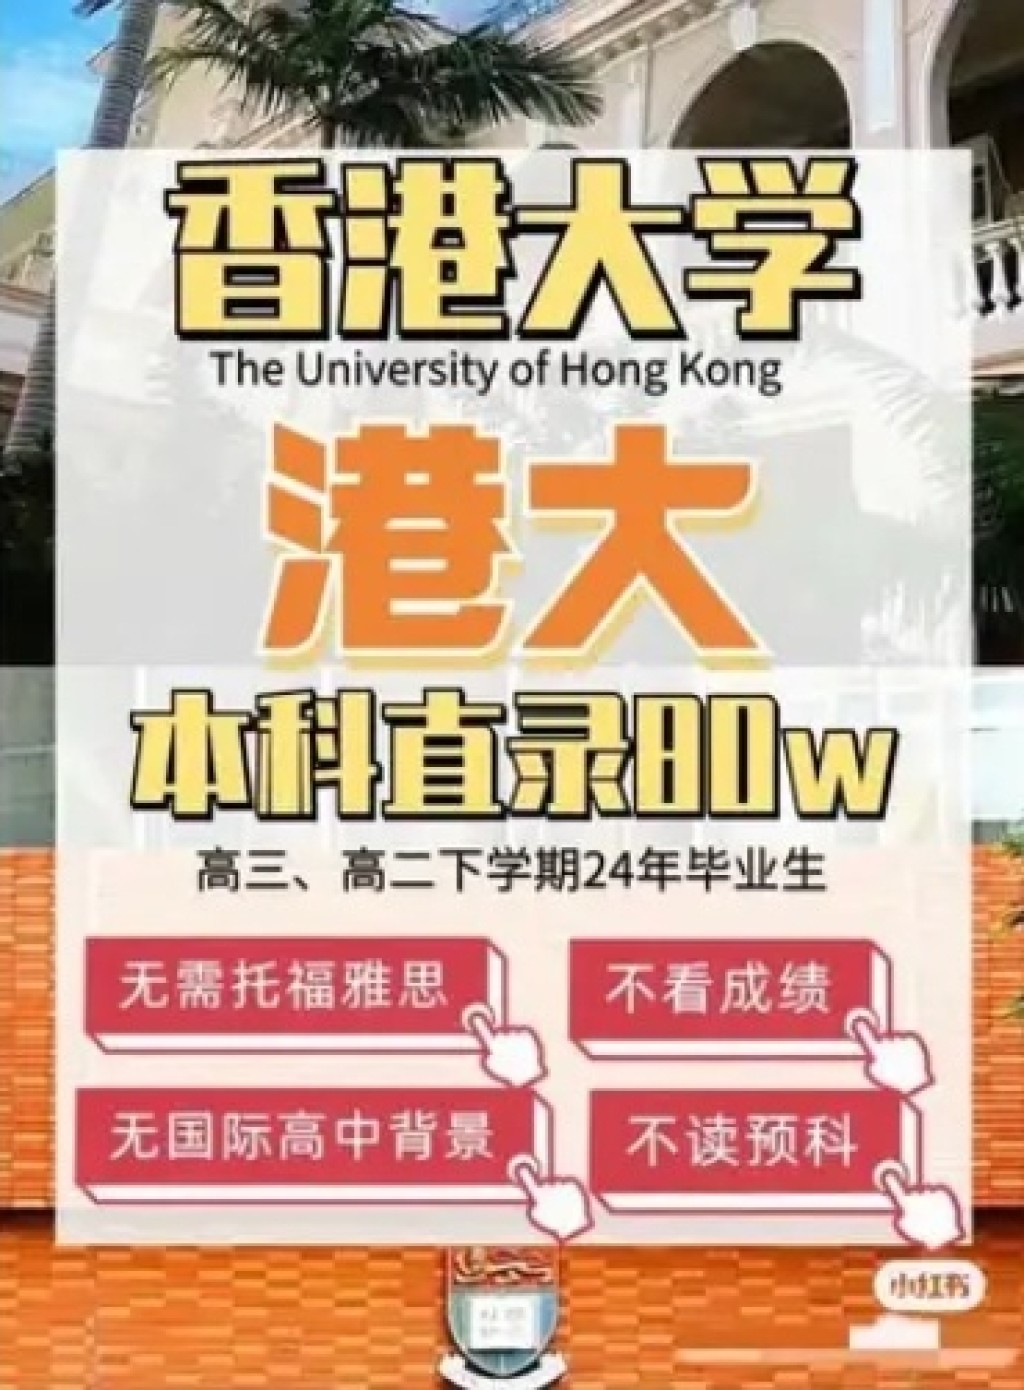 甚至有本科直錄香港大學，「無需托福雅思成績、無需國際高中背景、無需讀預科，申請費高達80萬元」。